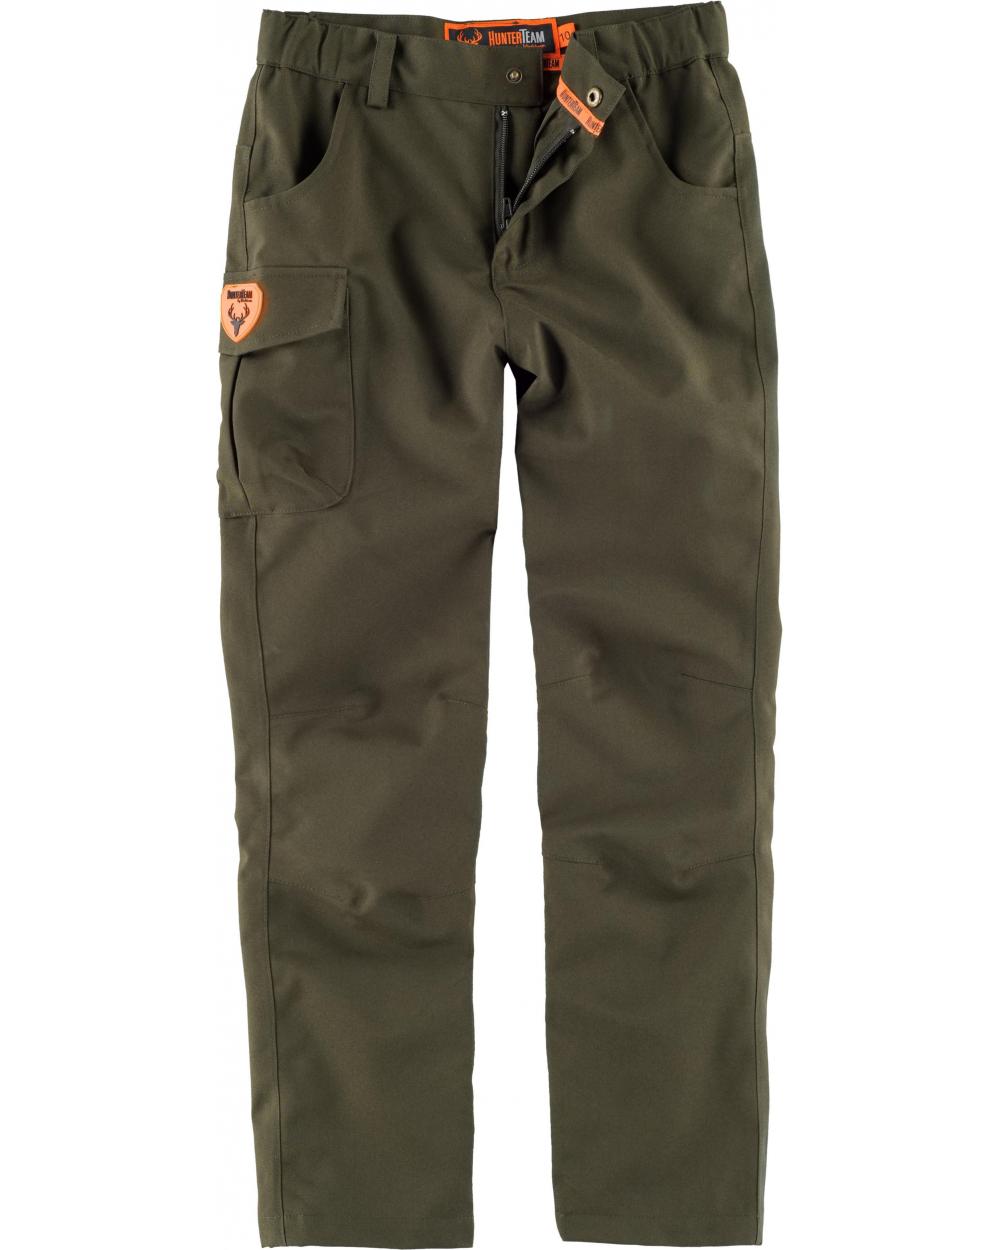 Comprar Pantalón de caza impermeable para niño Verde Caza online bataro delante